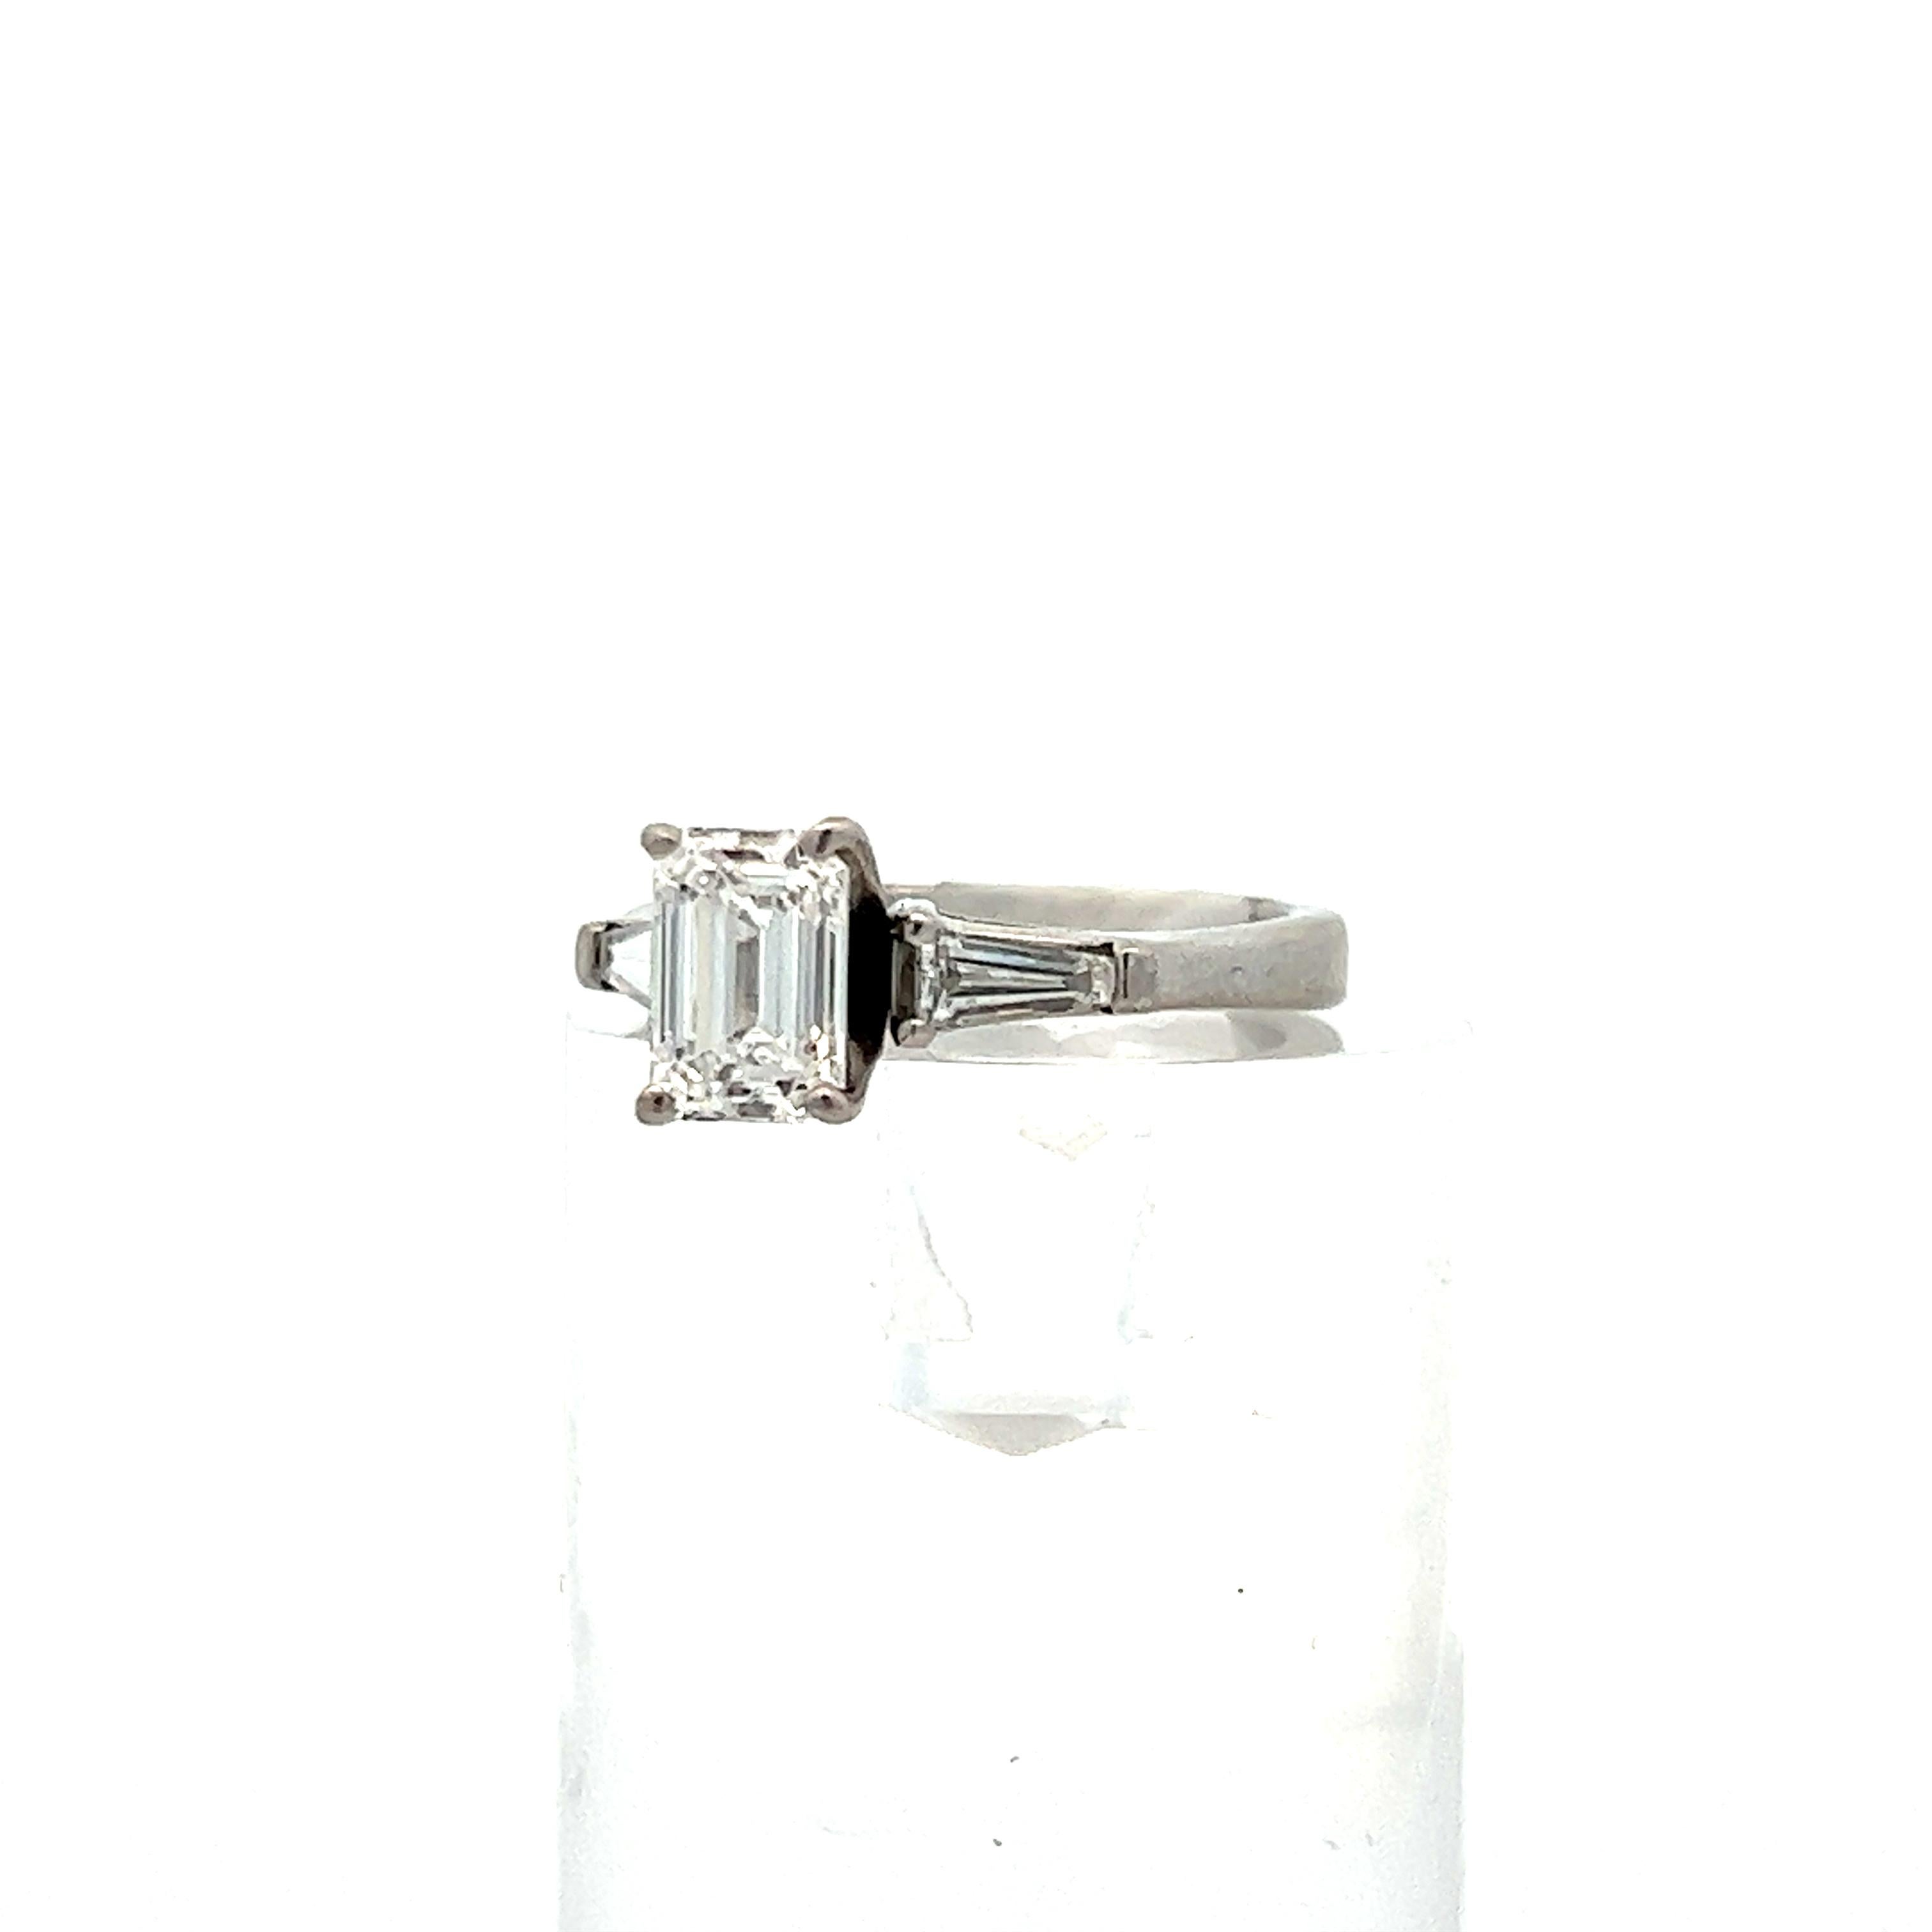 Dies ist eine atemberaubende Smaragd und Baguette-Diamant Verlobungsring in Platin GIA E VS1, Gesamtgewicht 1,54ct gesetzt. ! Dieser Ring hebt einen eisweißen Diamanten im Smaragdschliff hervor, der zwischen zwei glänzenden Baguette-Diamanten in